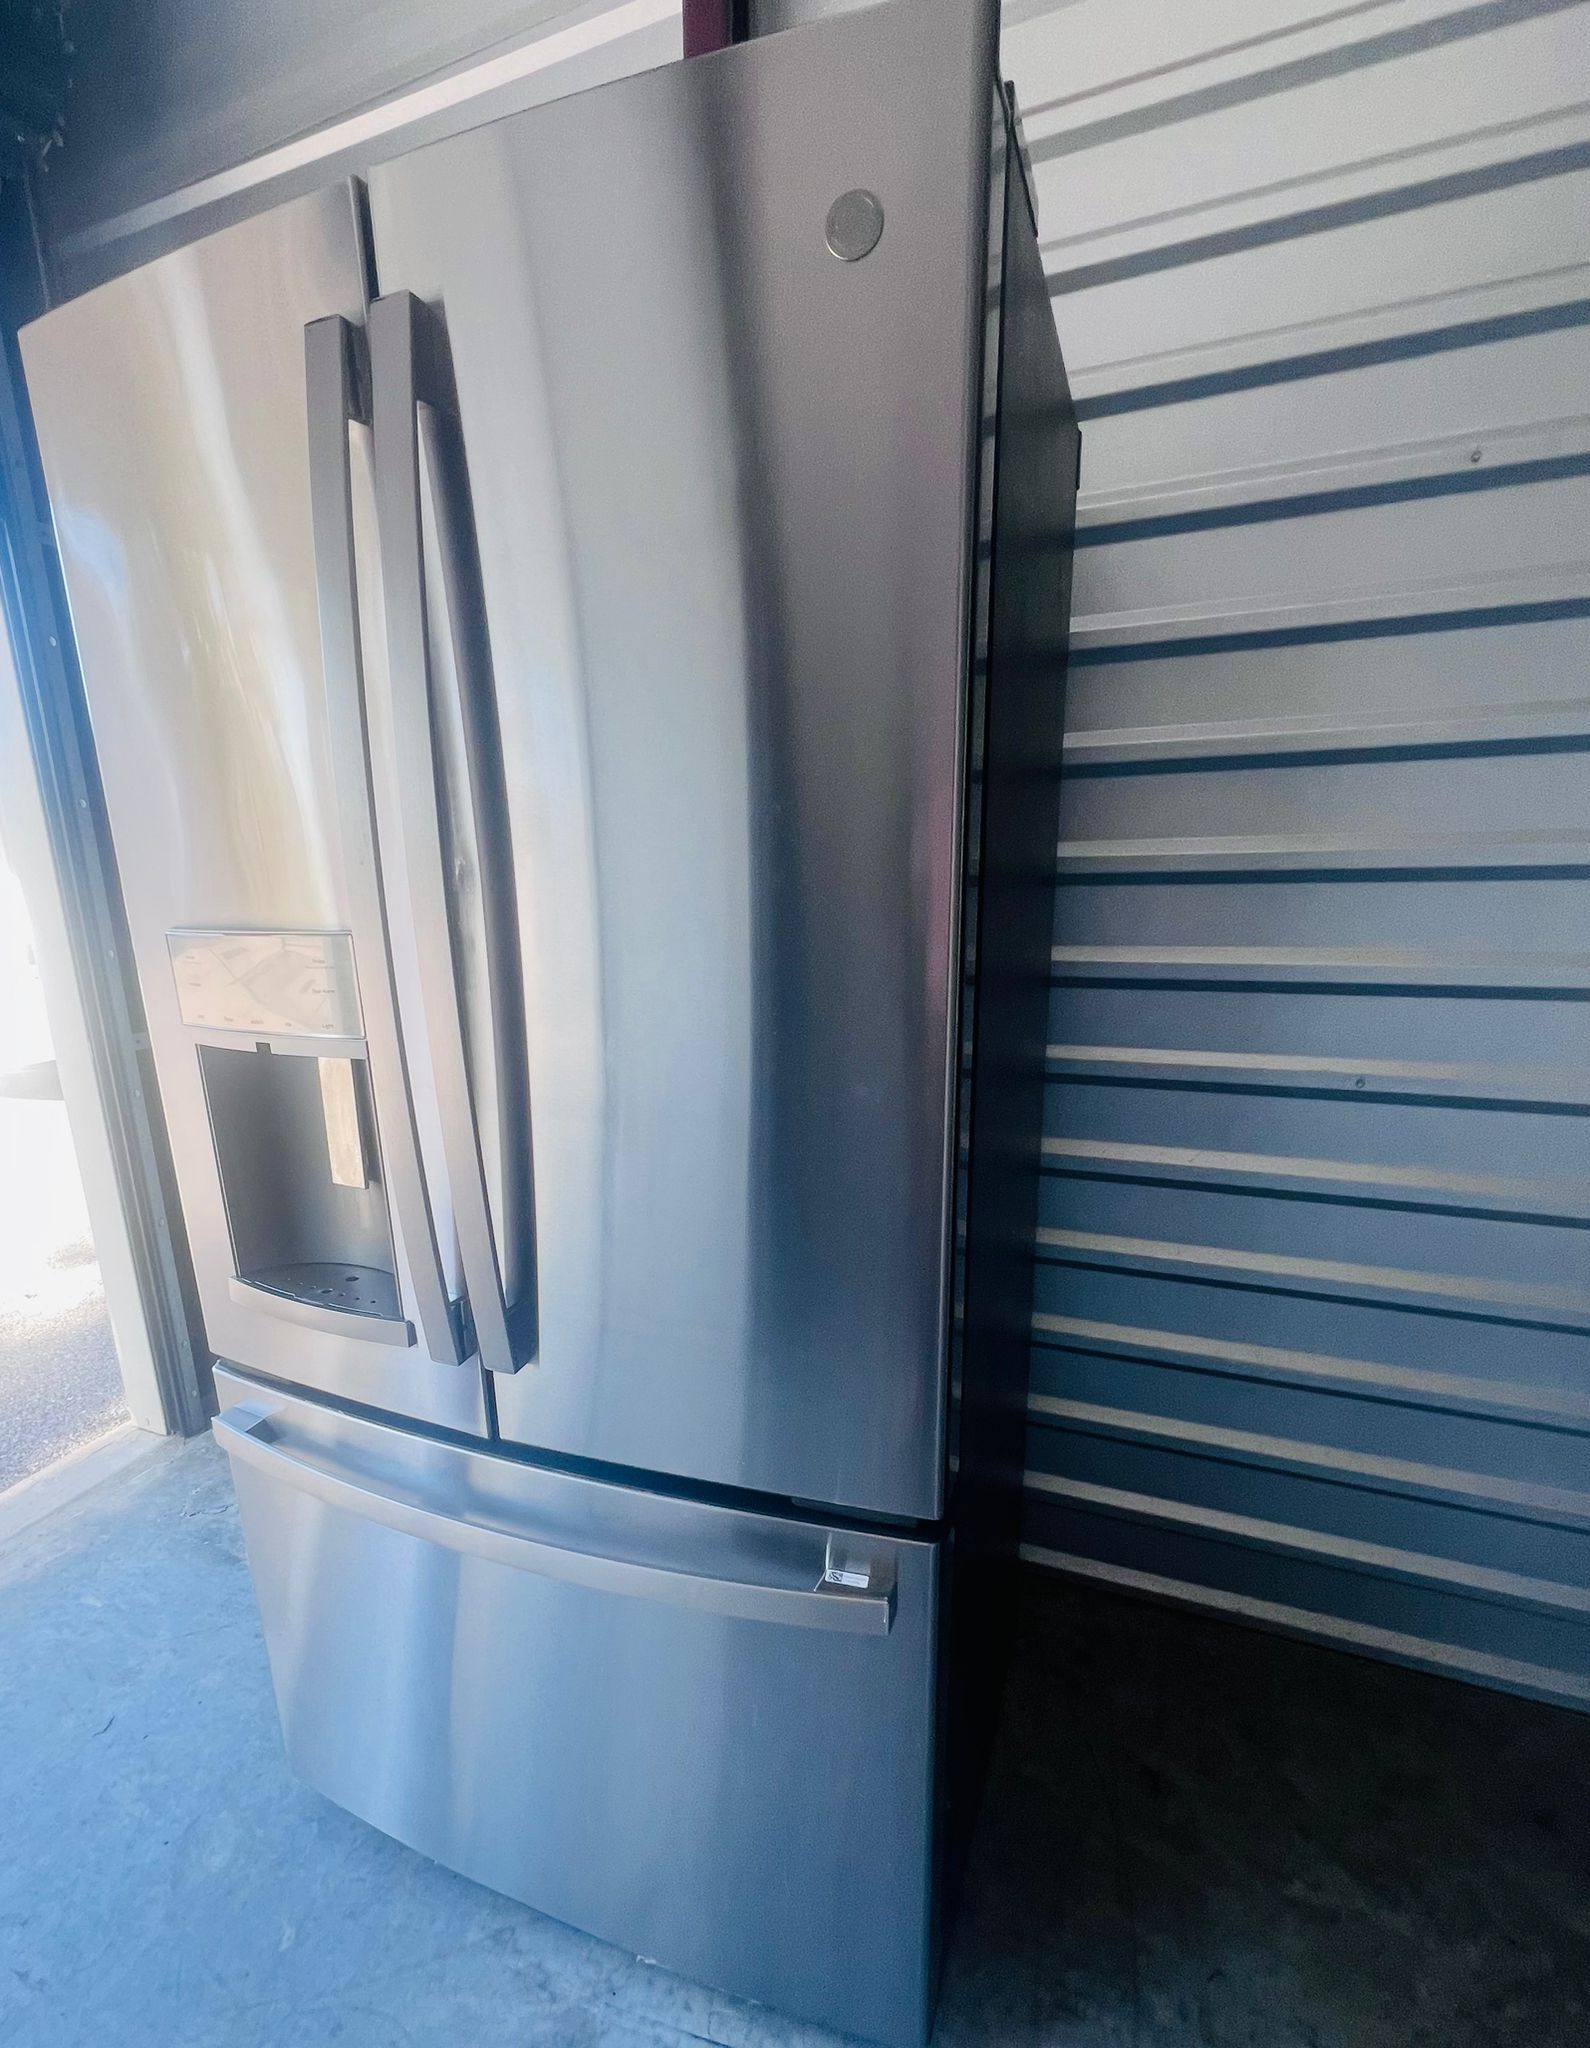 GE Refrigerator Stainless Steel 3 Door